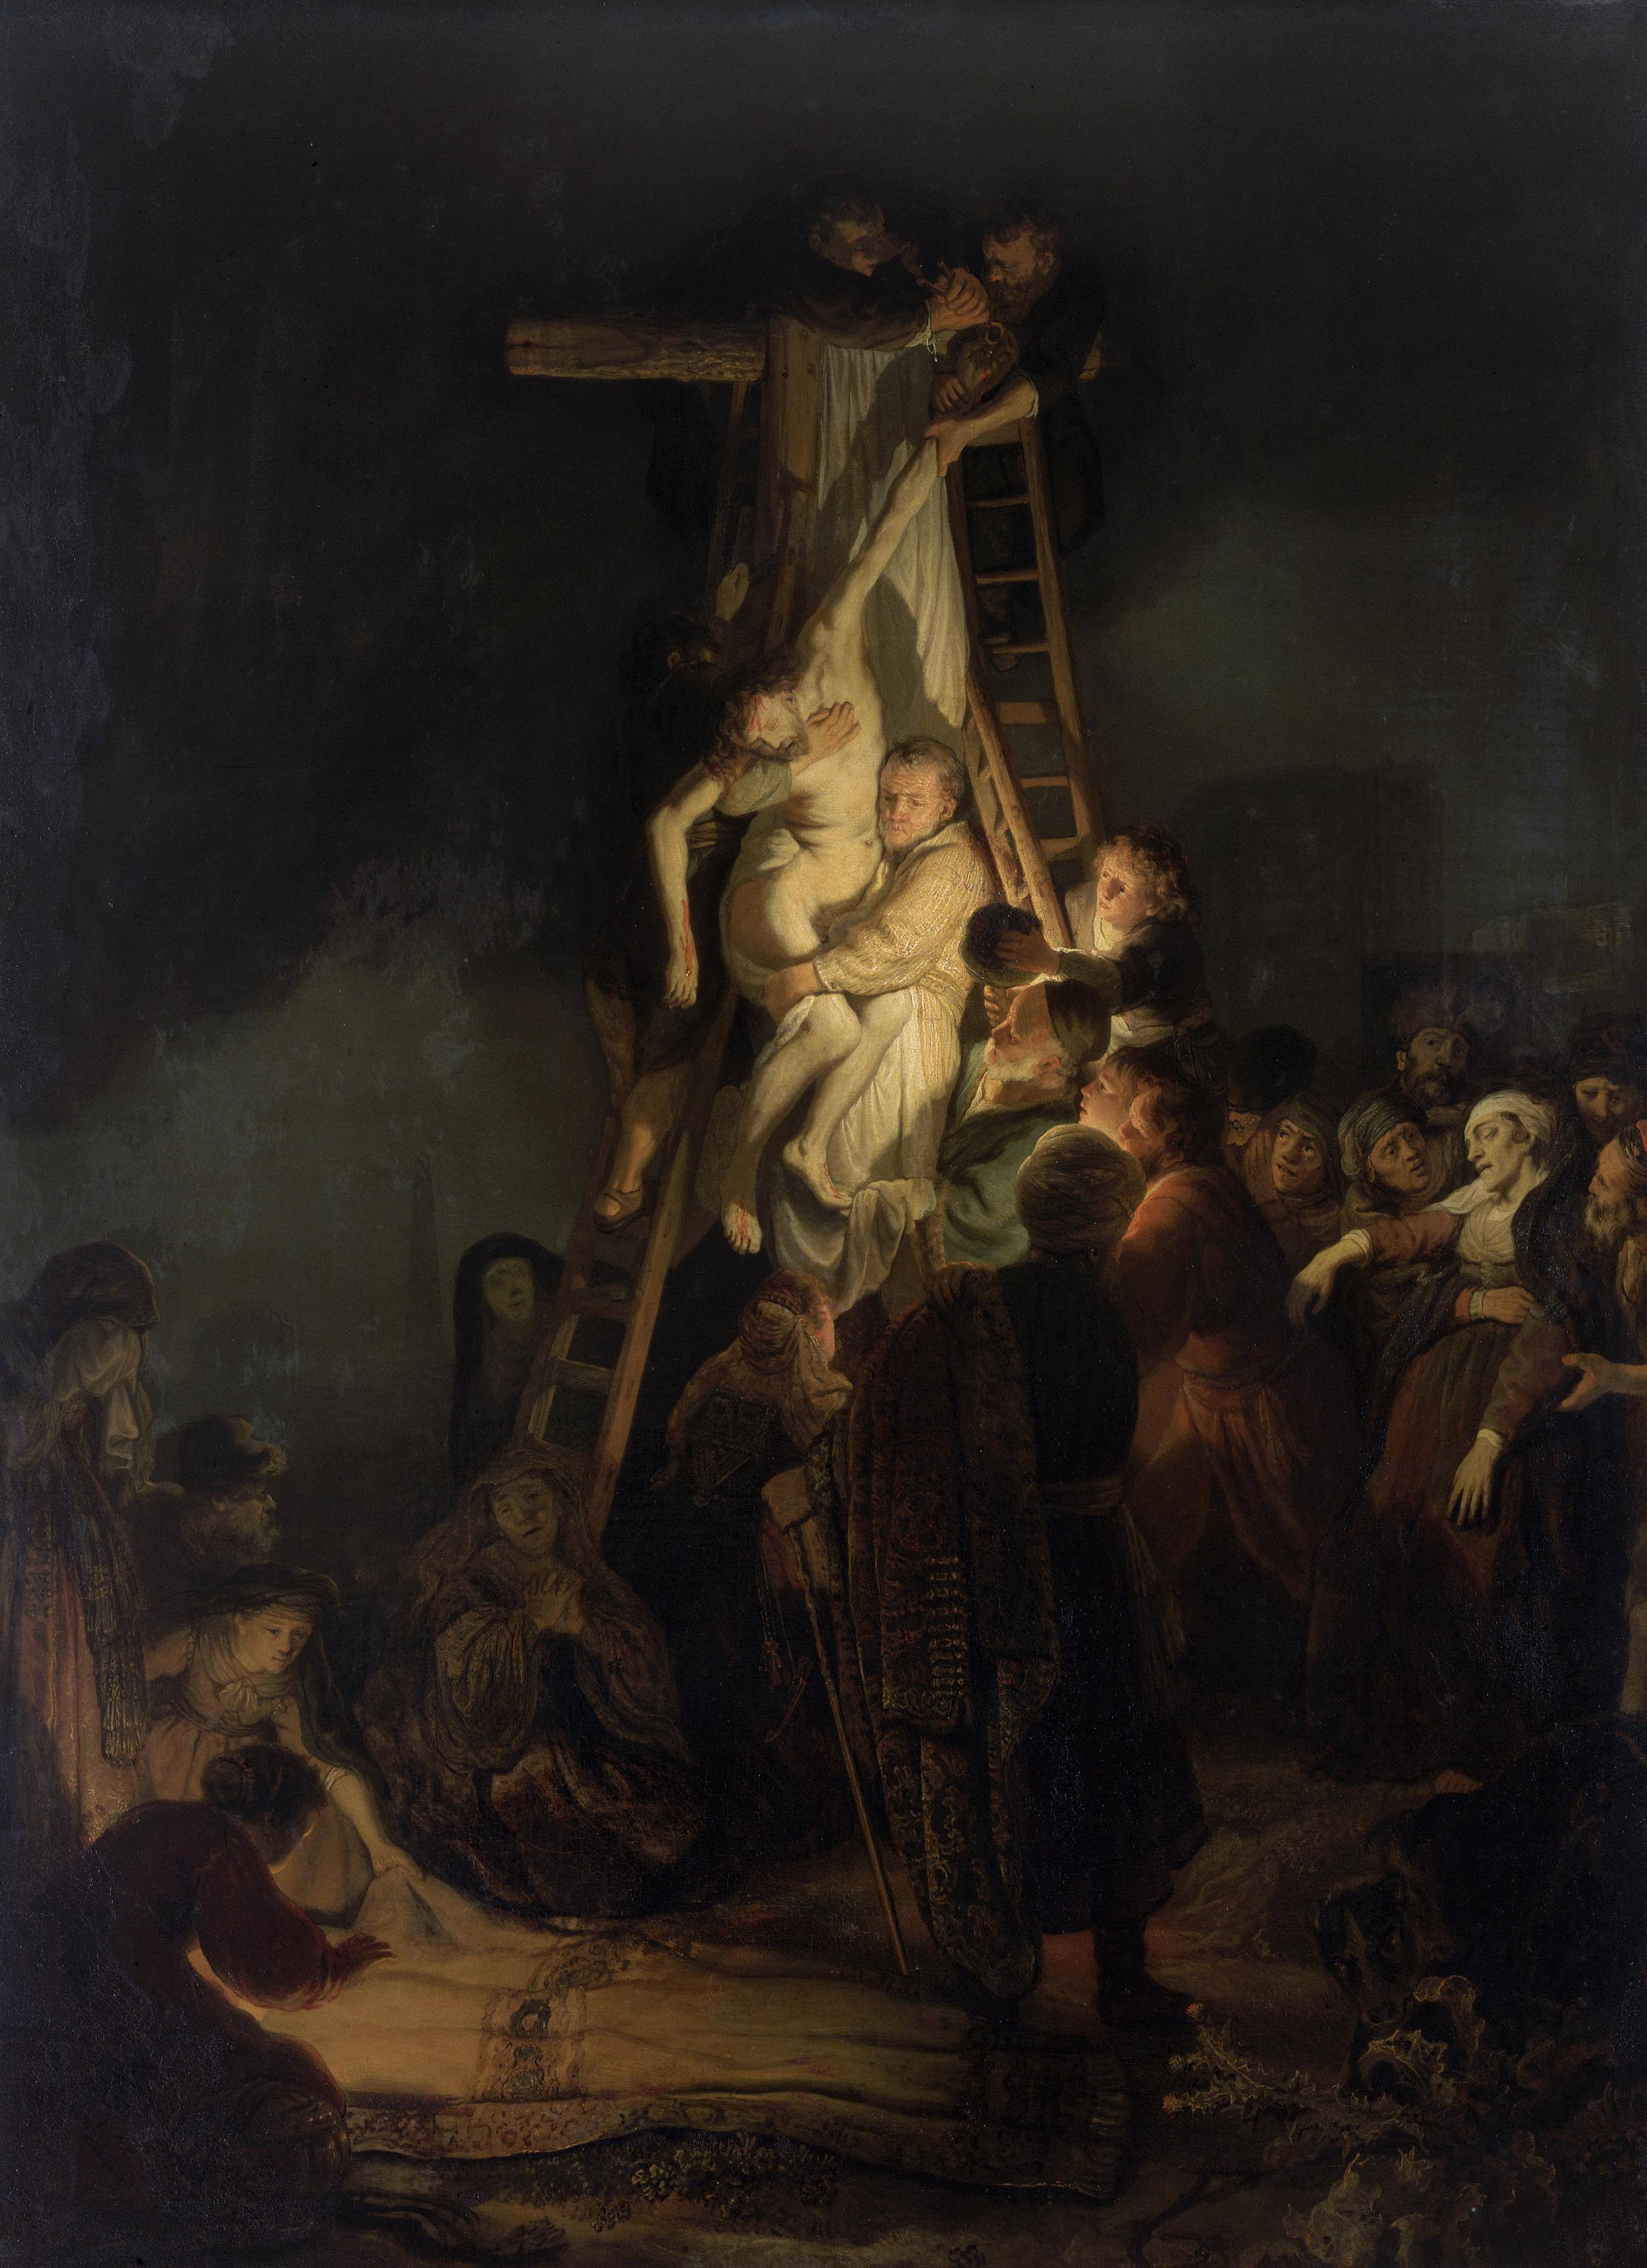 Malen von Religion in der Zeit Rembrandts